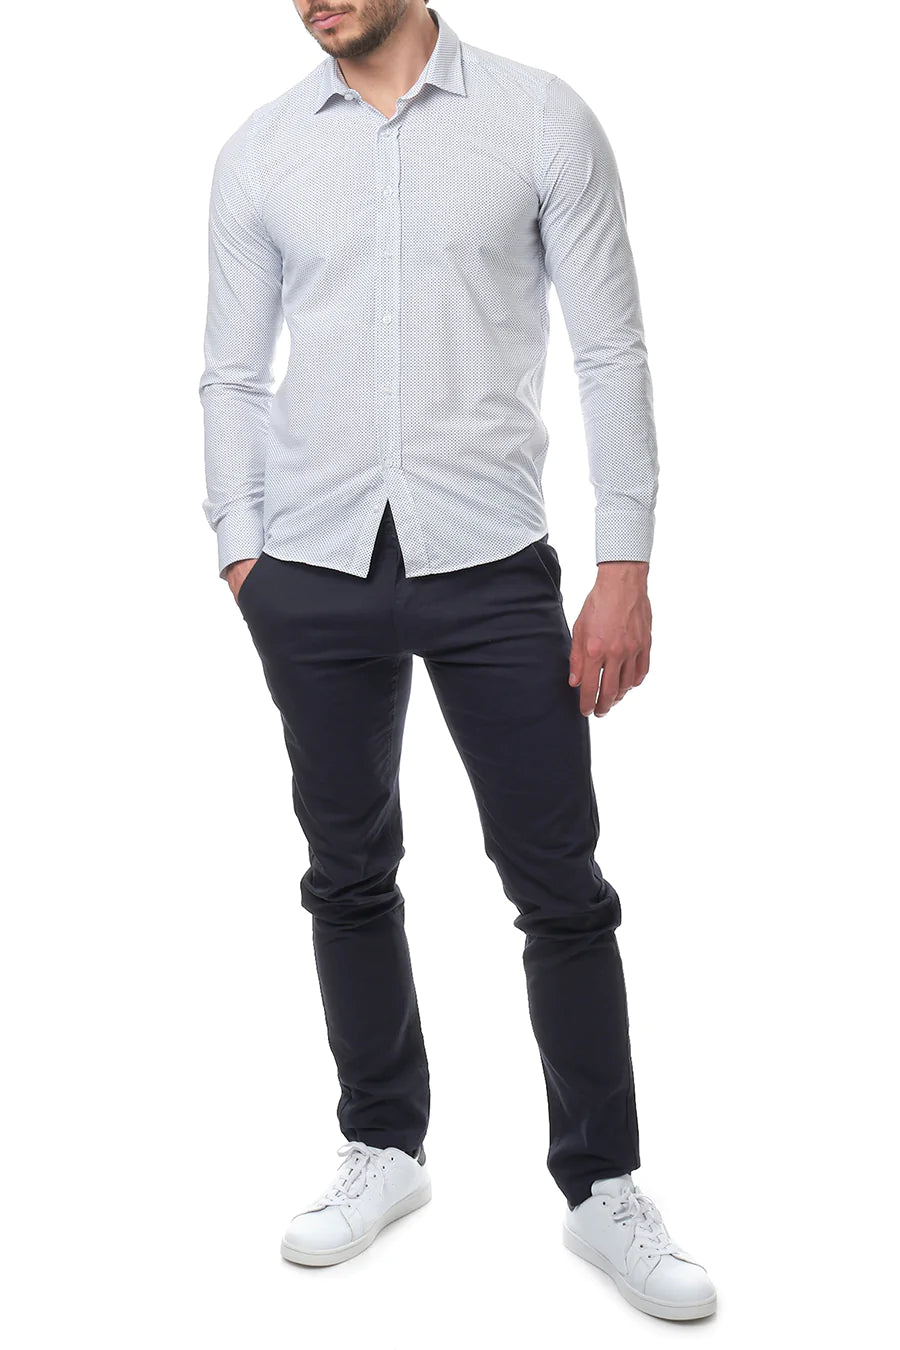 Ανδρικό πουκάμισο Nigel, Λευκό 5